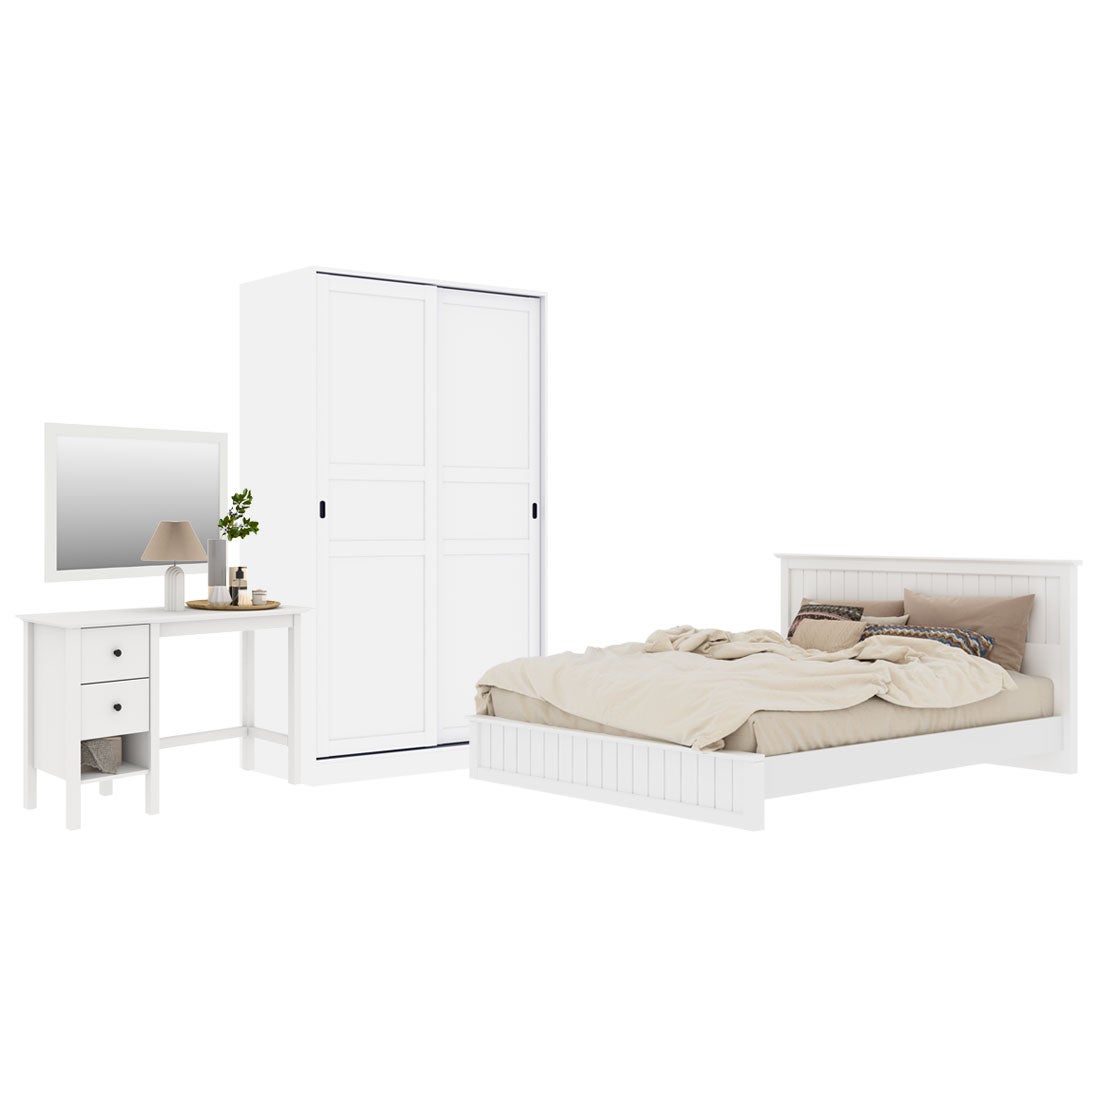 ชุดห้องนอน ขนาด 6 ฟุต รุ่น Moneta & ตู้บานเเลื่อน 120 ซม. สีขาว01